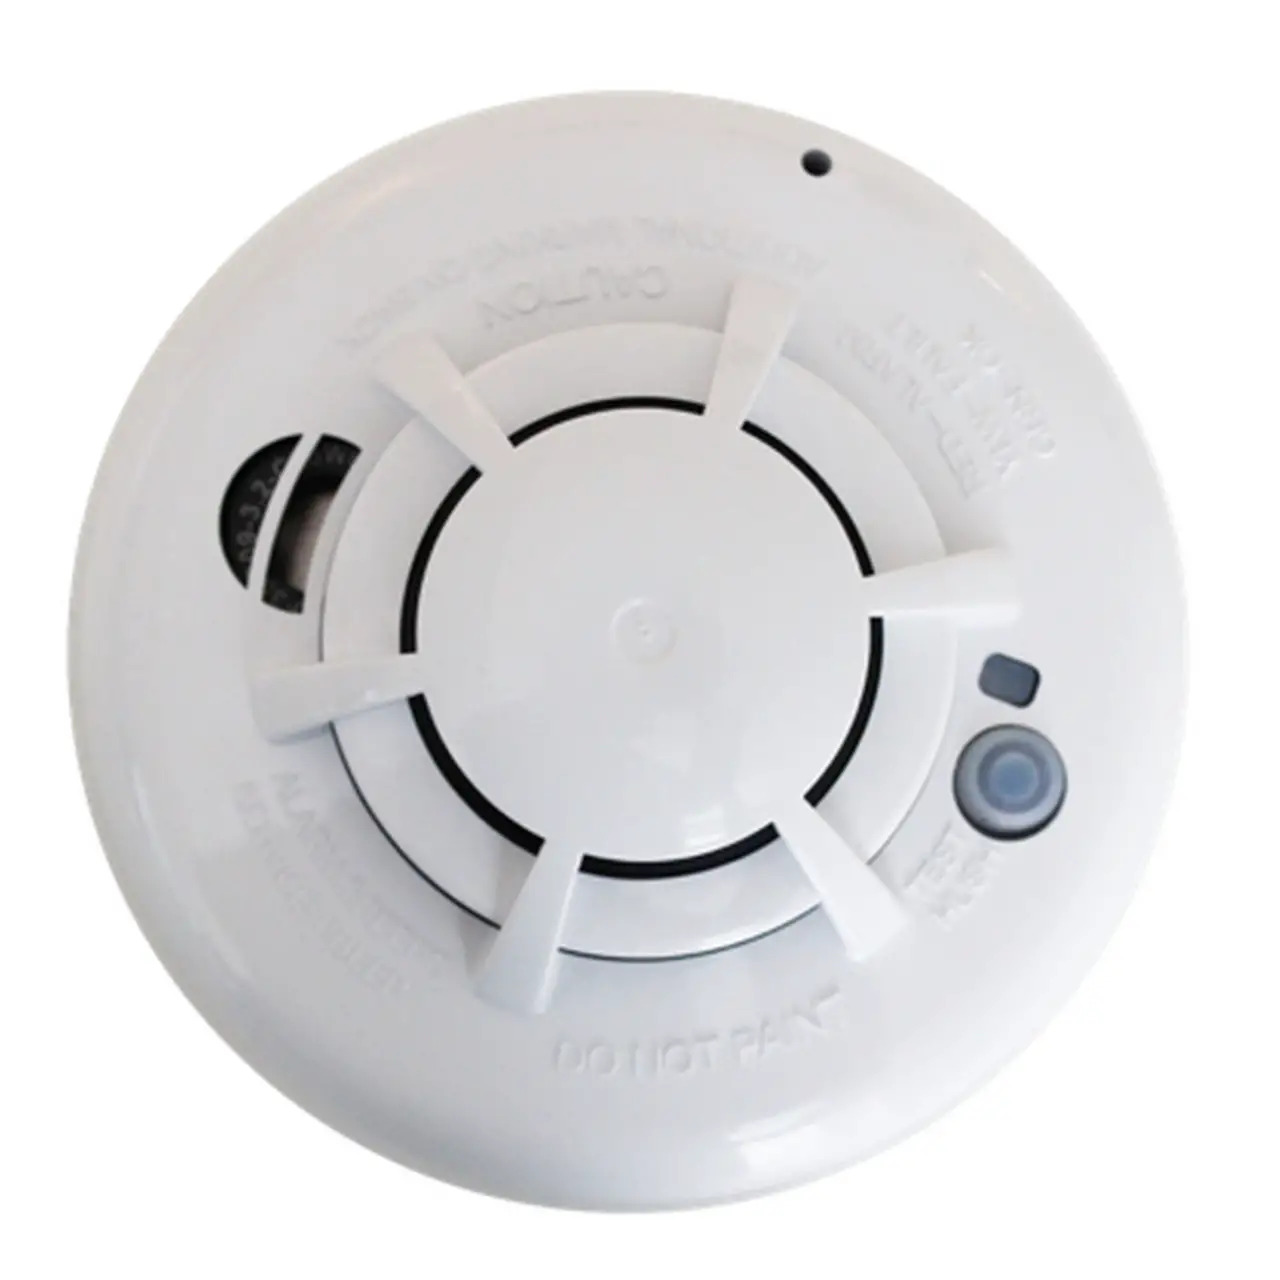 QS5110-840 IQSmoke Wireless Smoke Heat Alarm